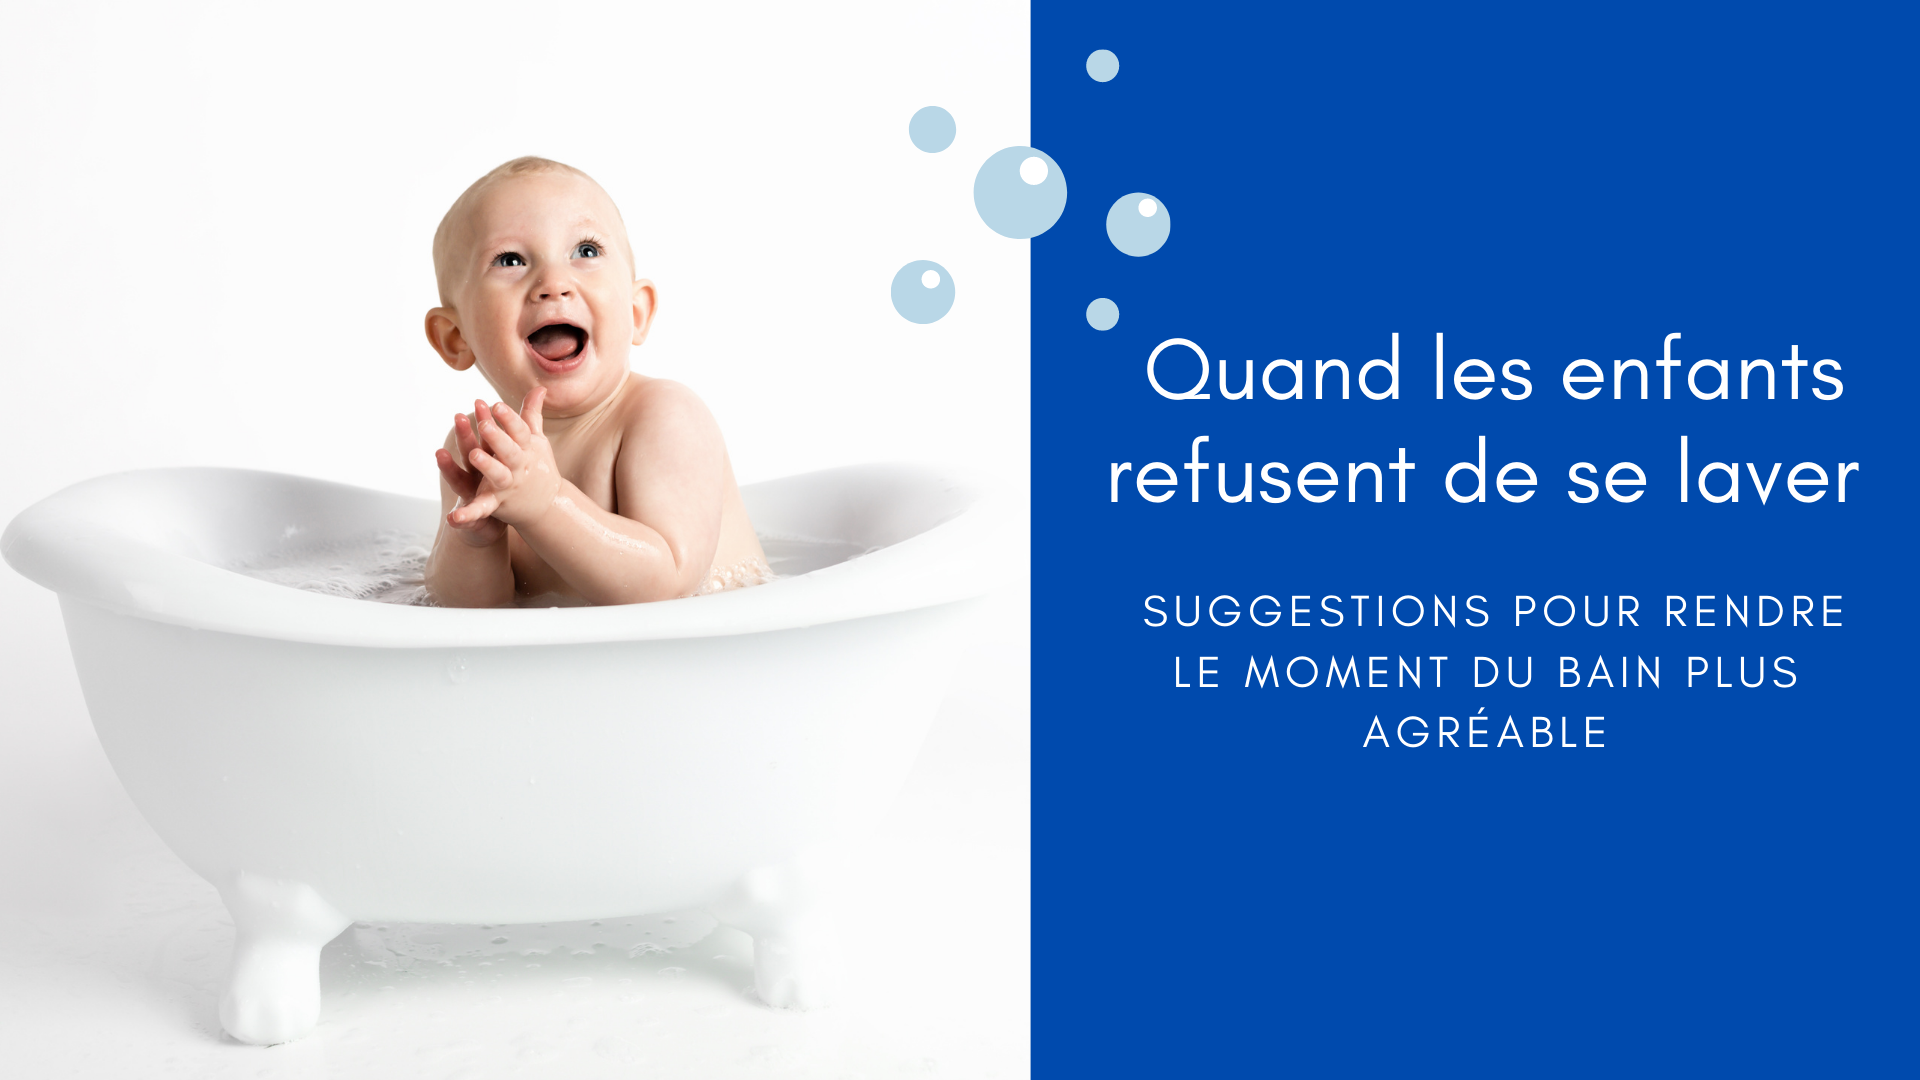 https://apprendreaeduquer.fr/wp-content/uploads/2021/02/enfant-refuse-de-se-laver-prendre-bain.png